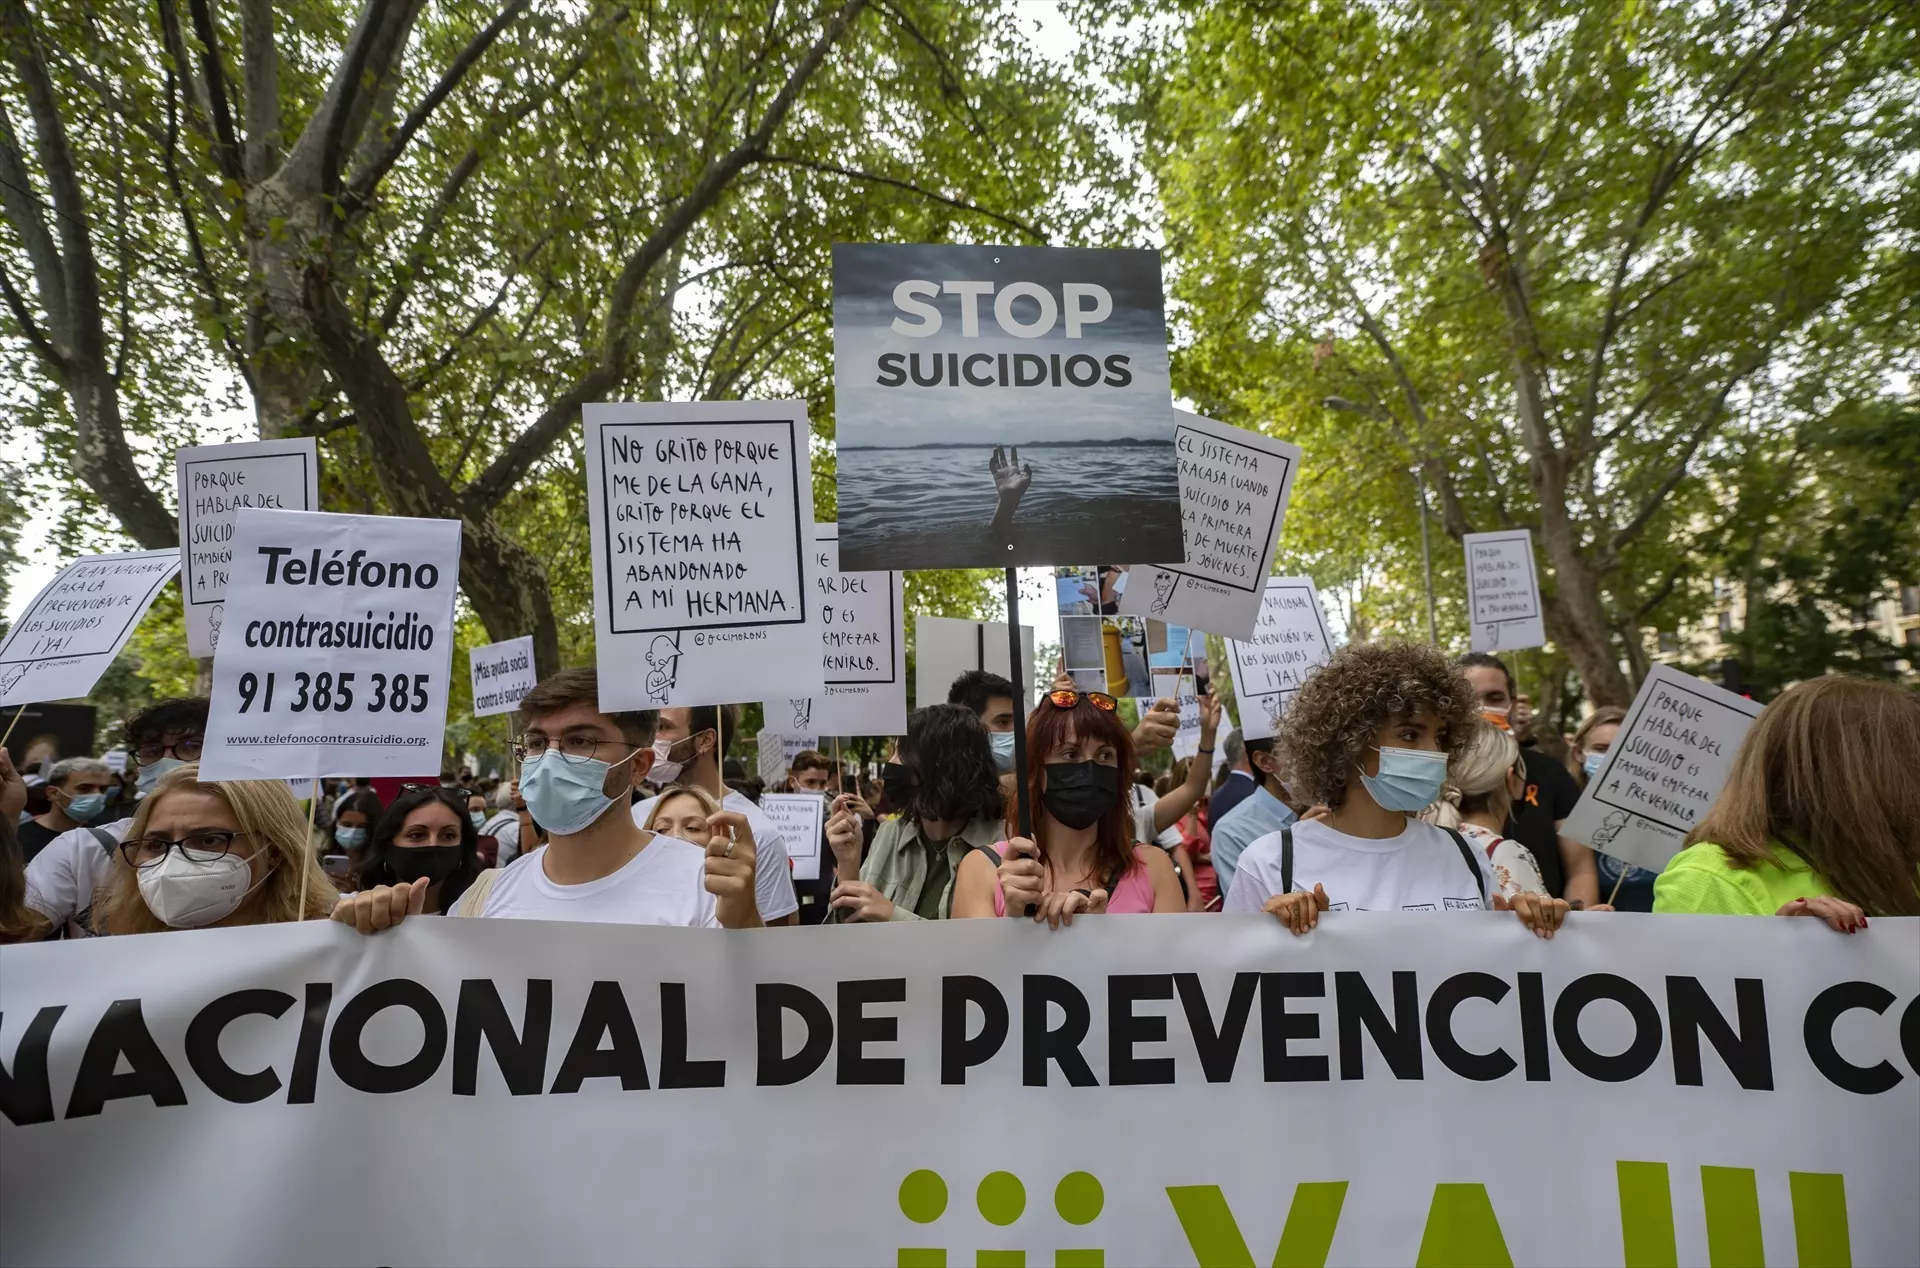 La mitad de las provincias españolas superan la media mundial de mortalidad por suicidio